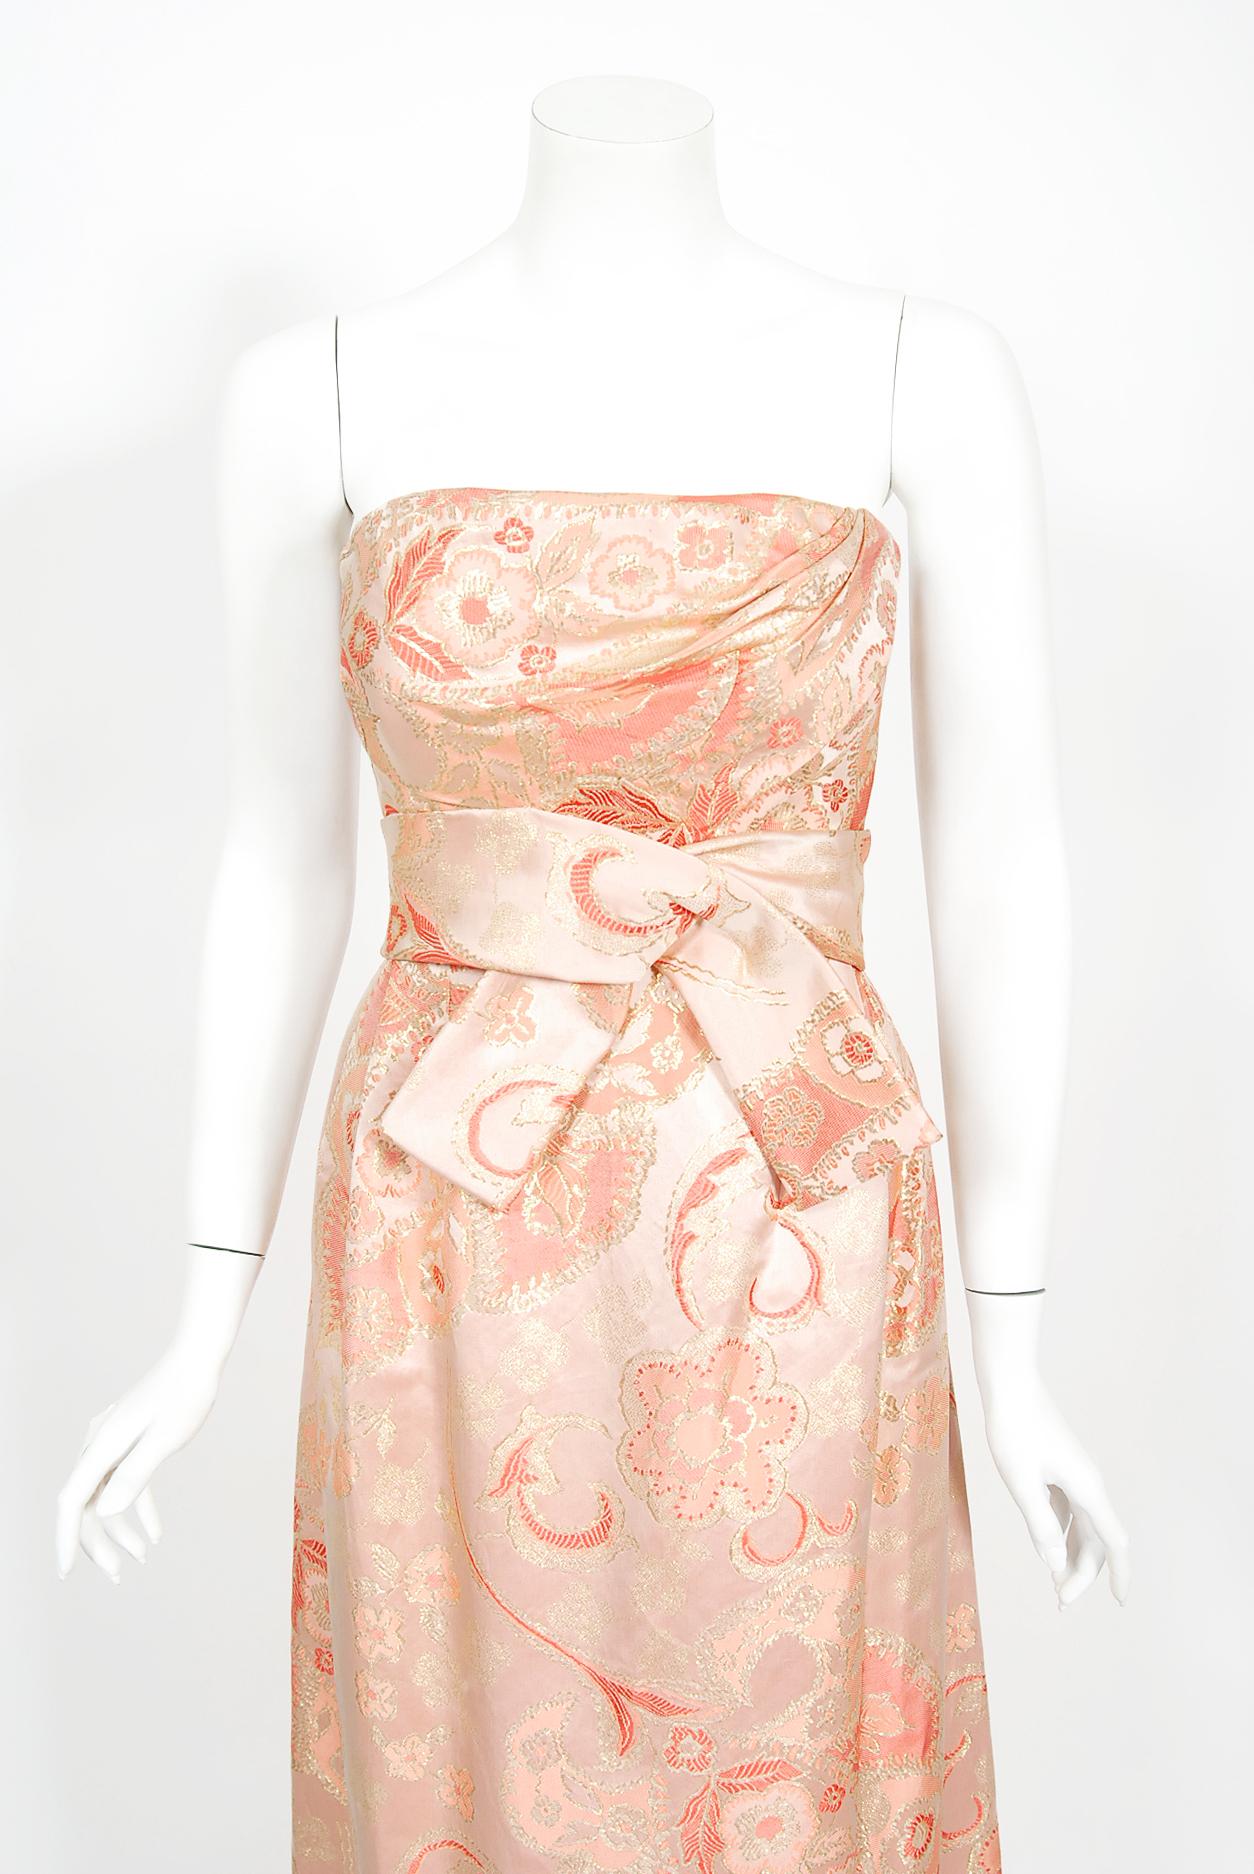 1963 dress